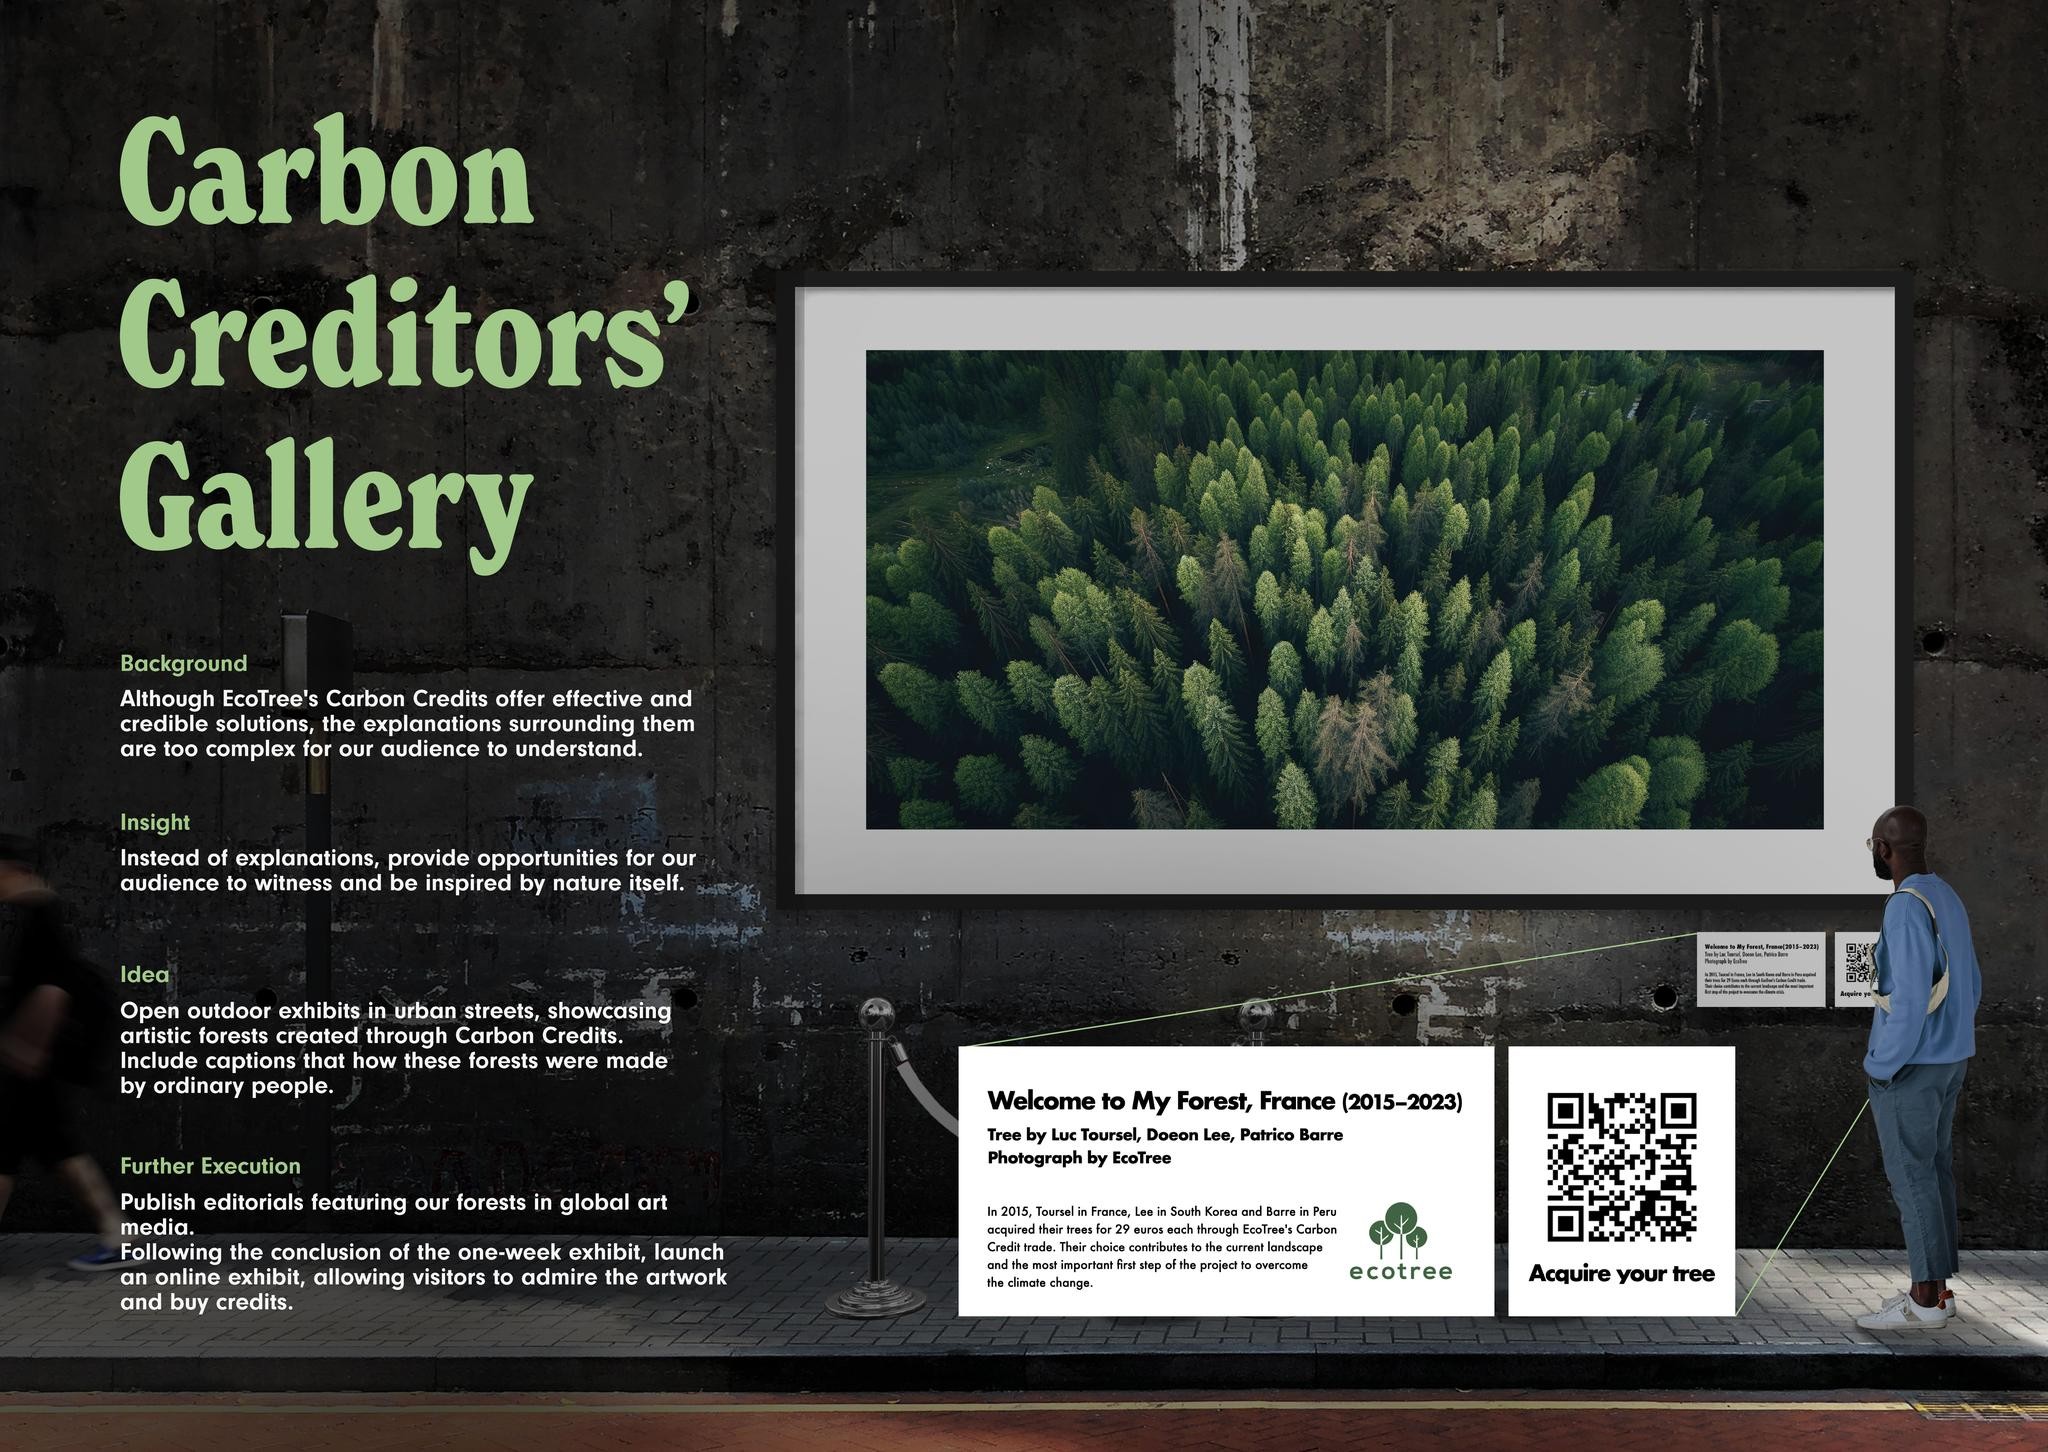 Carbon Creditors' Gallery